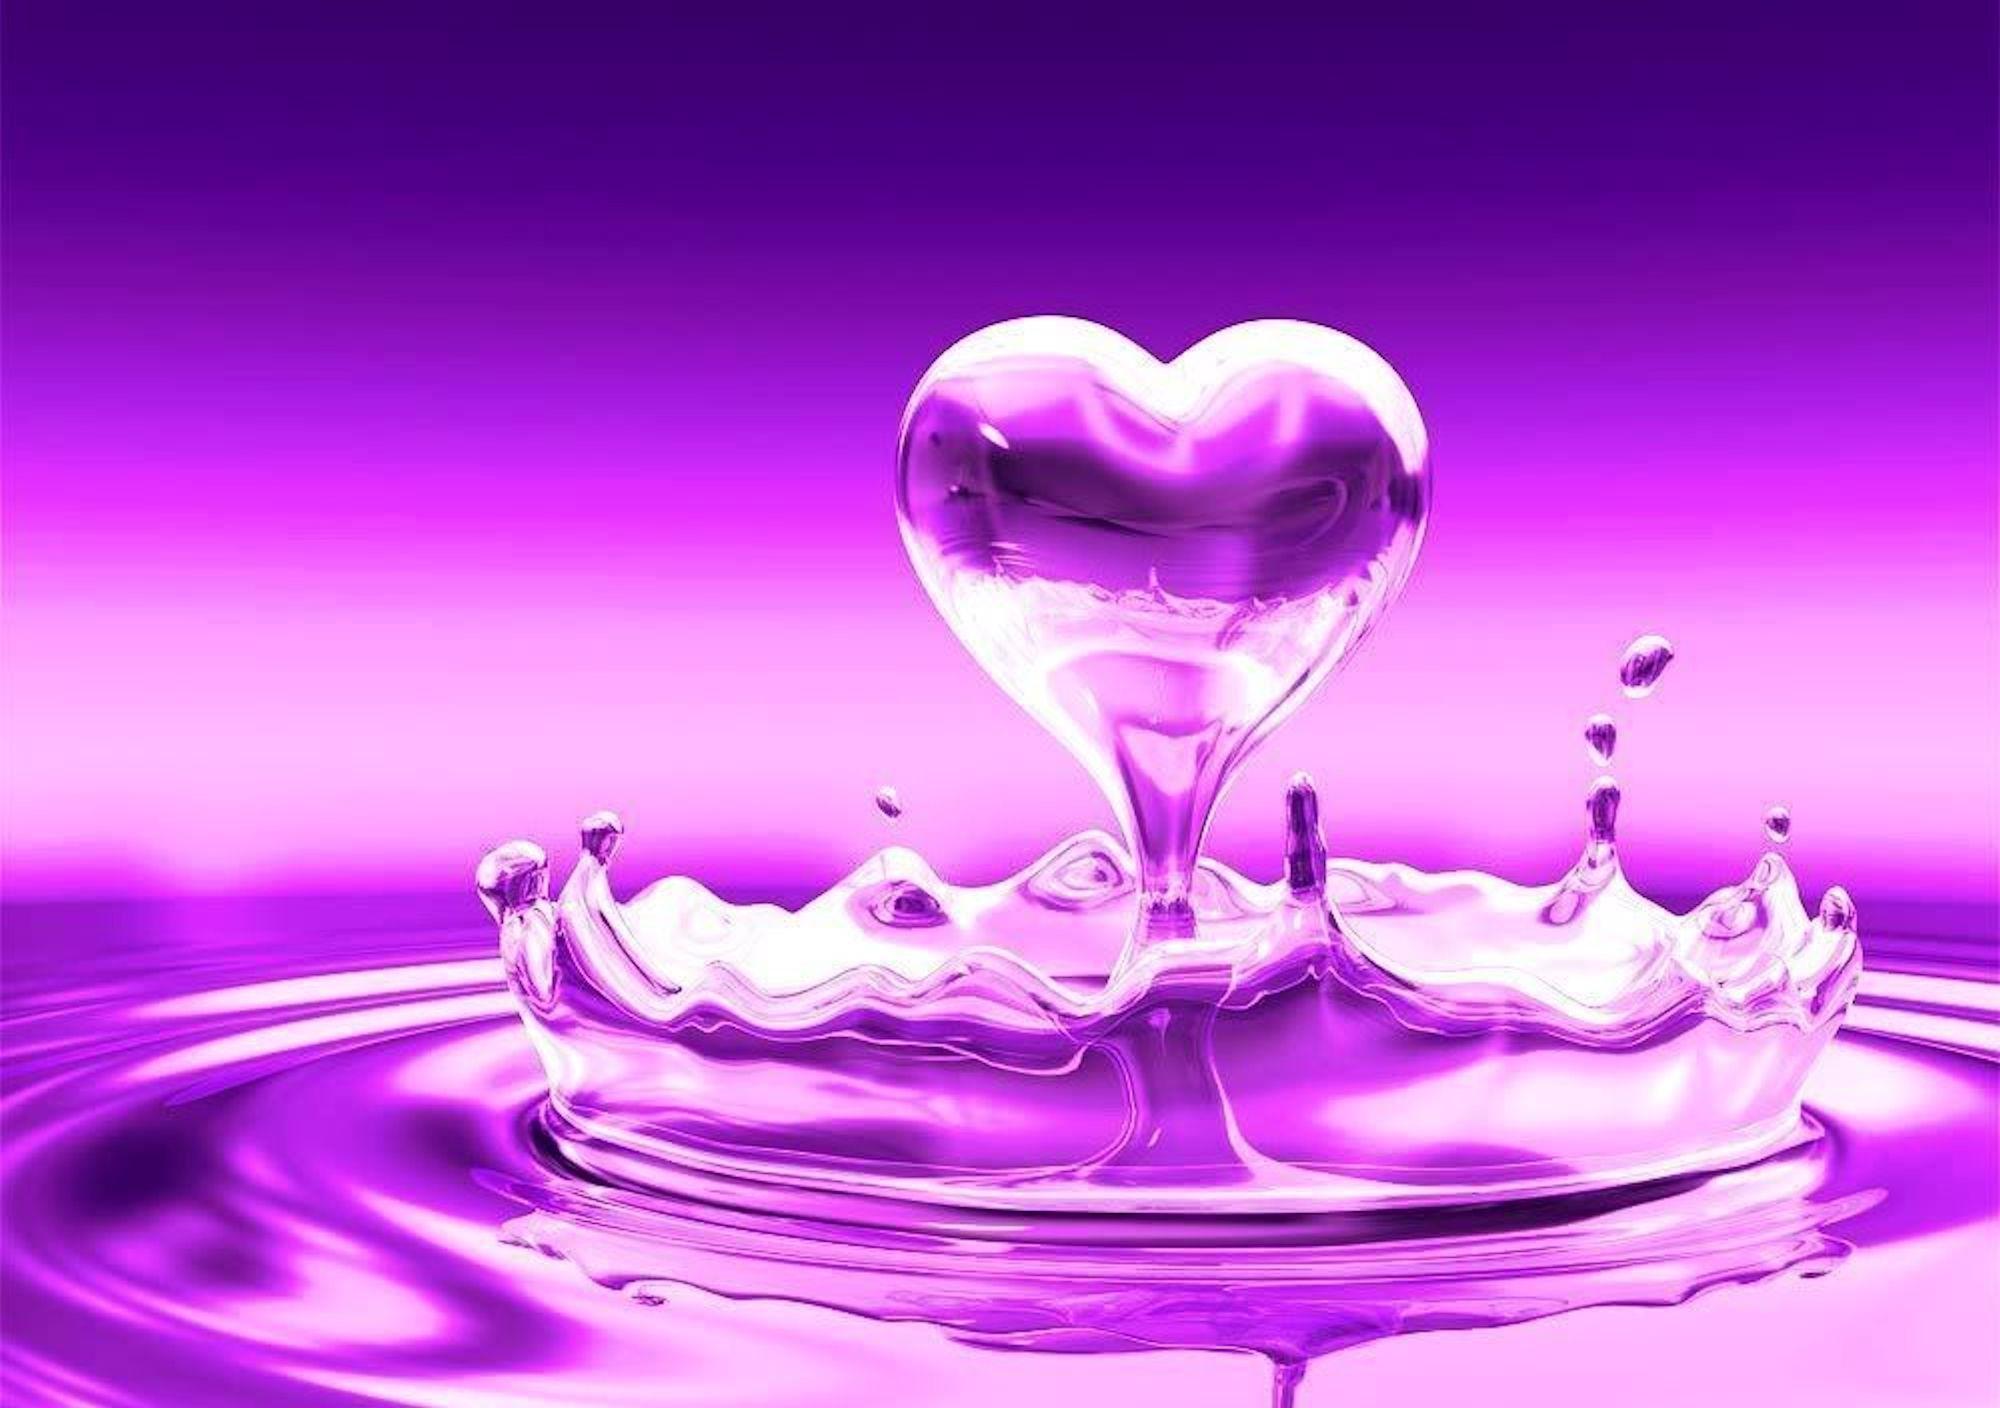 HD Purple Heart Wallpaper. I Heart Hearts. Water Drops